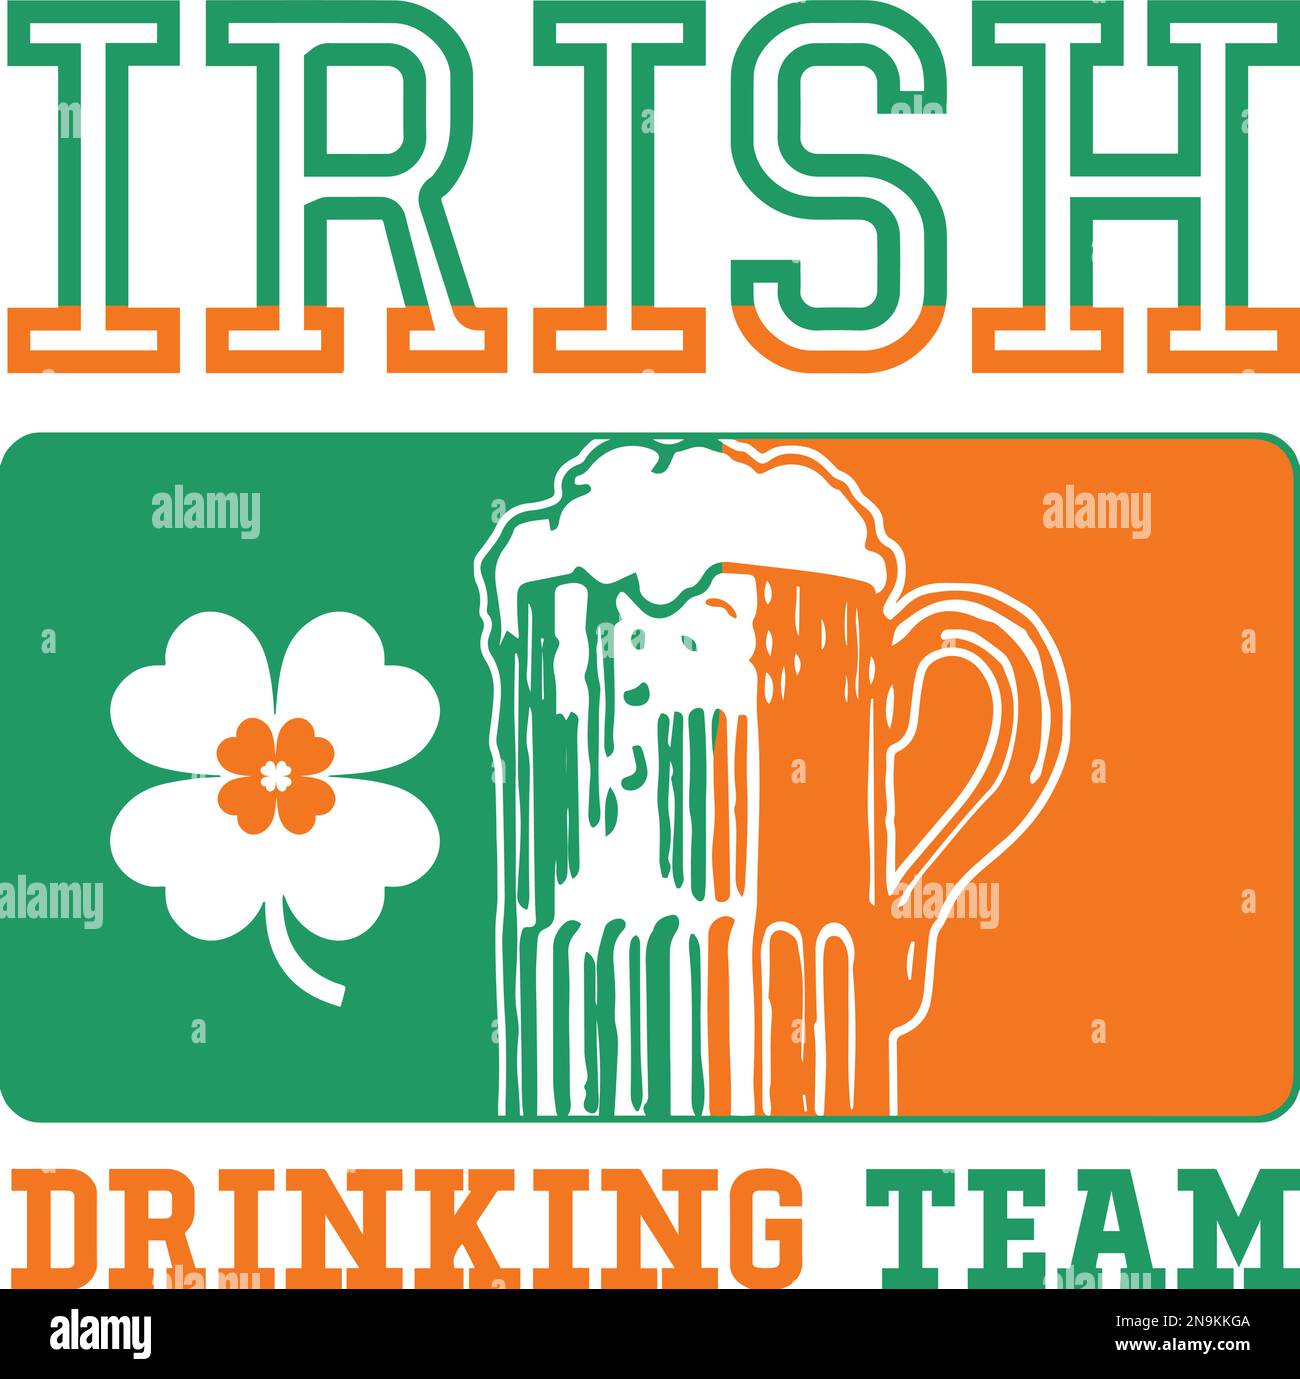 Irisches Trinkteam. Lustige Schriftzug zum St. Patrick's Day Stock Vektor